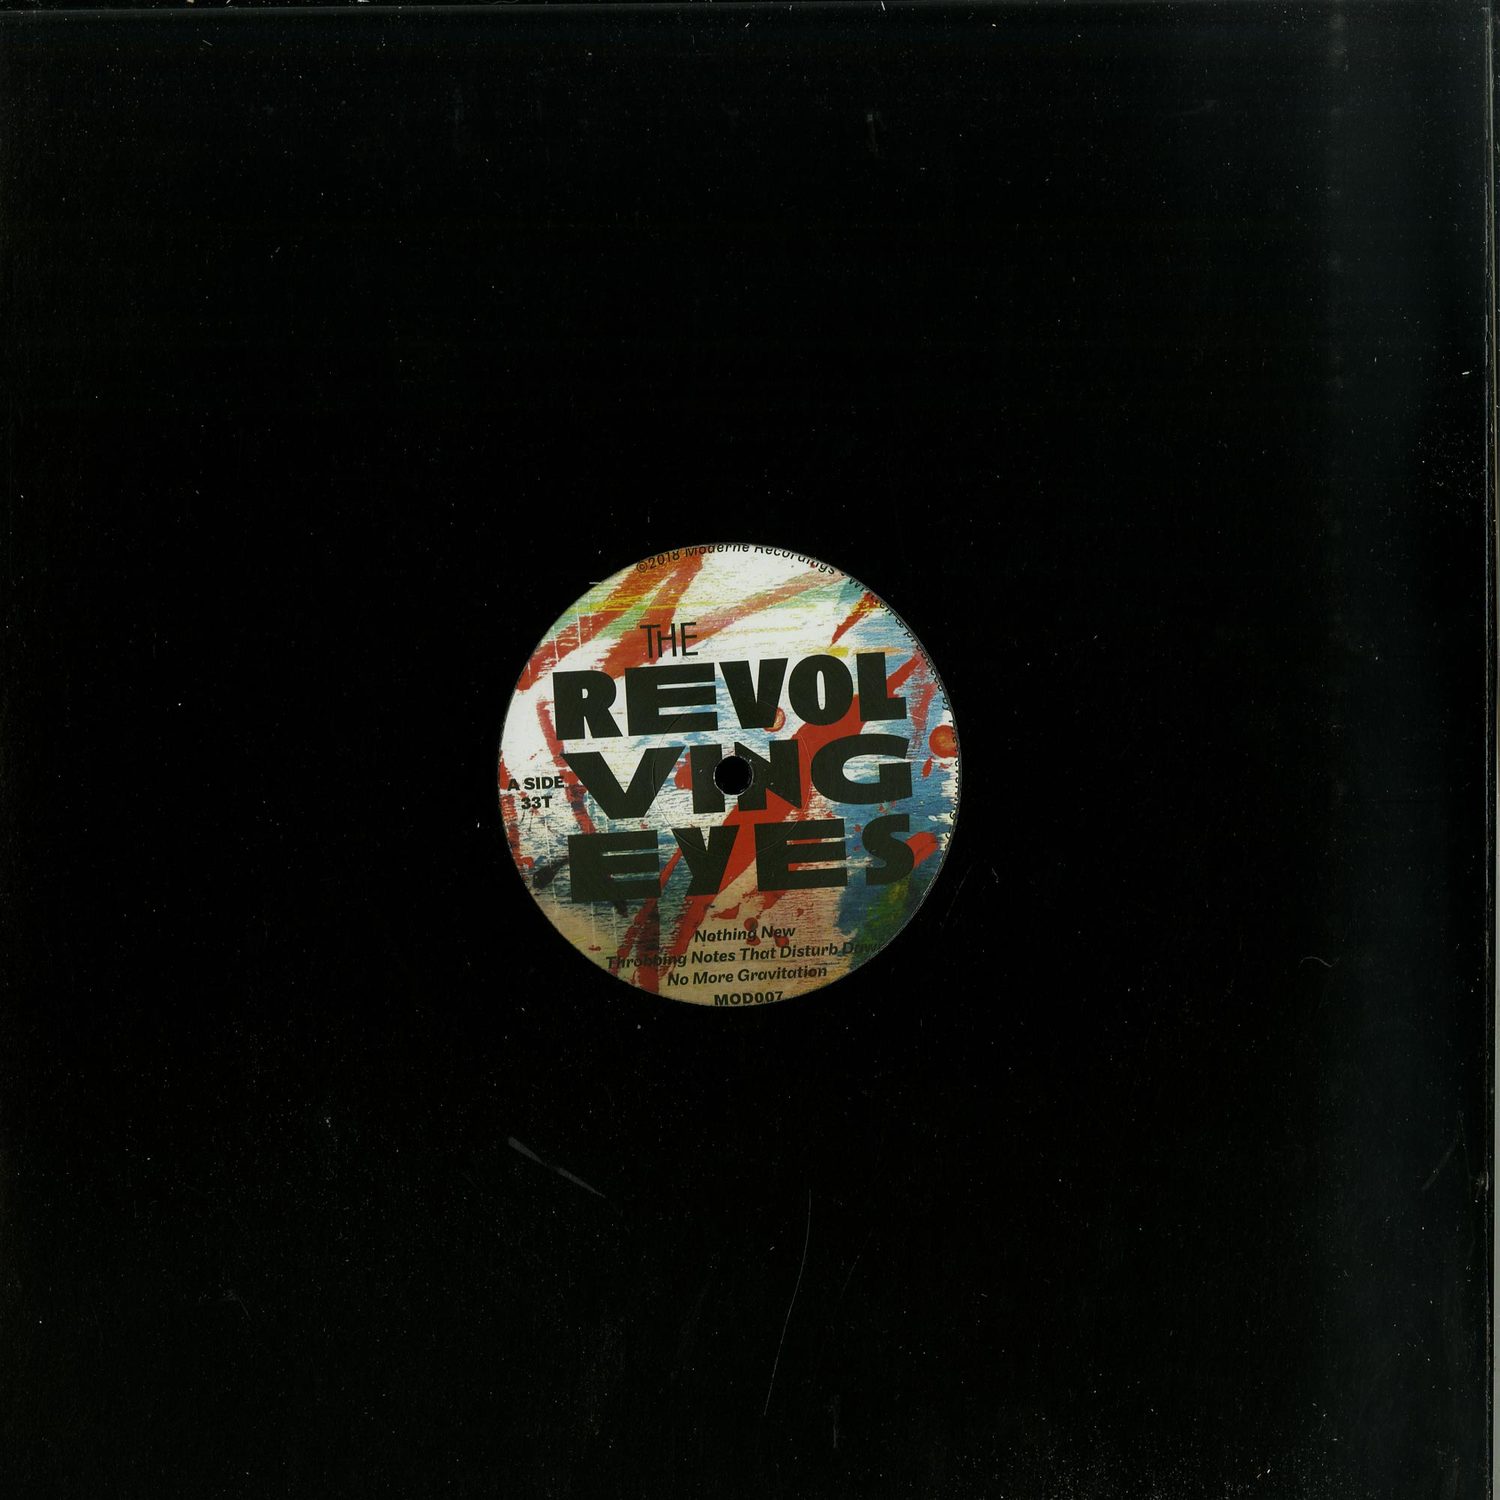 The Revolving Eyes / Nelson Bishop - SPLIT EP